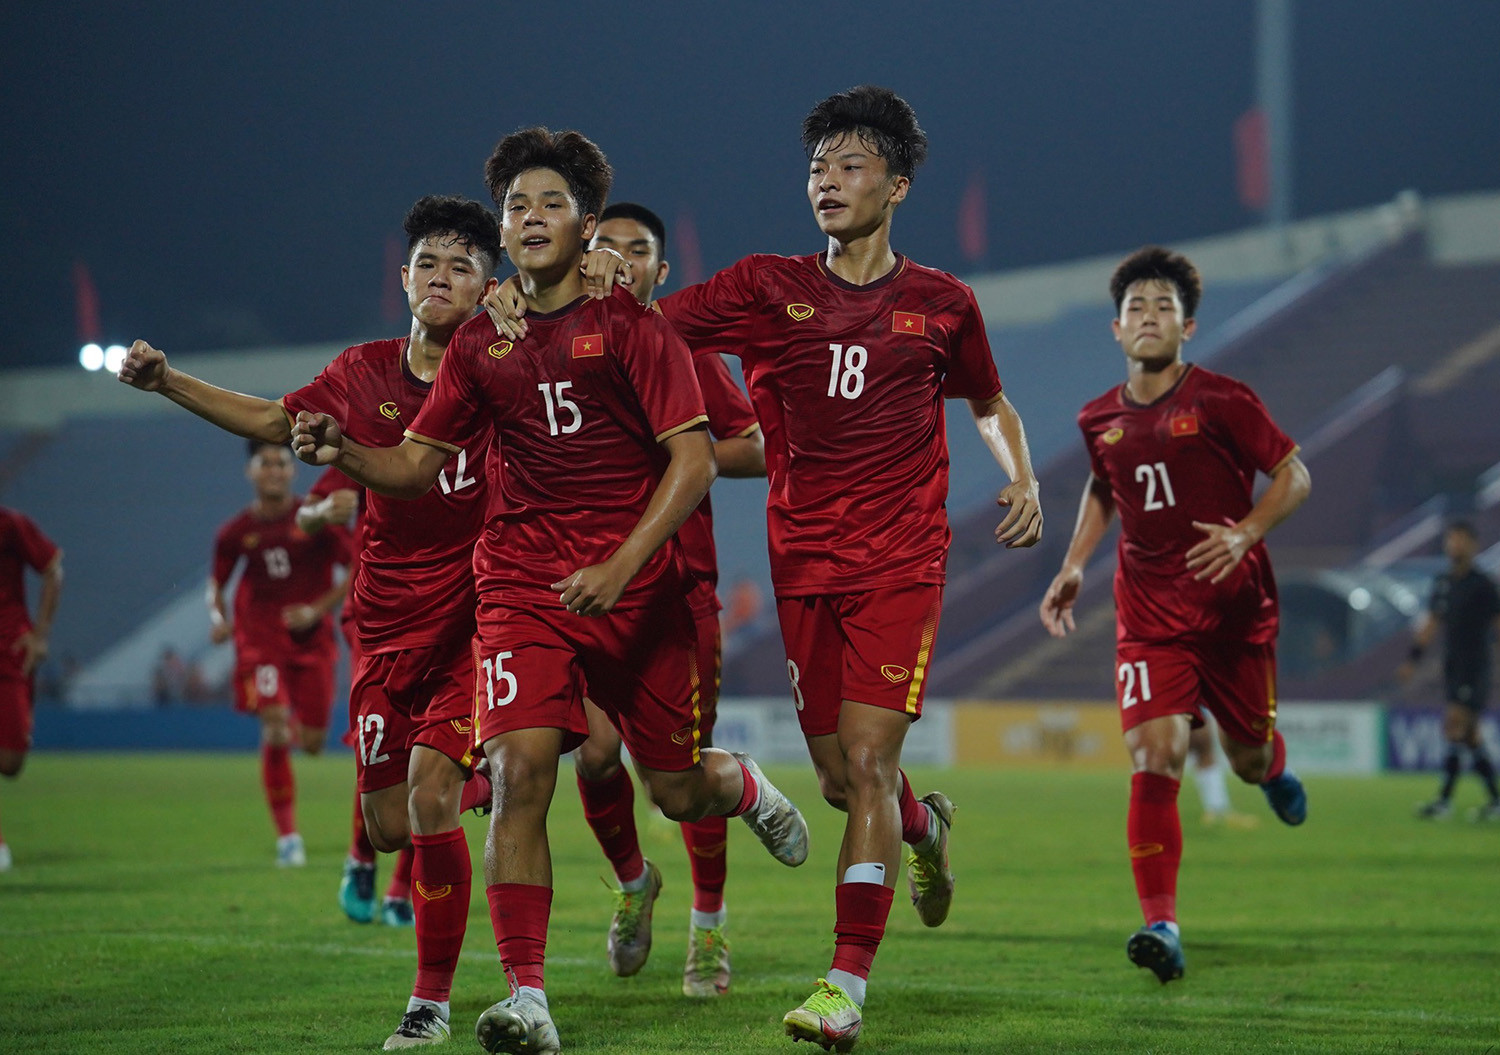 U17 Việt Nam đấu Nepal: Thắng đậm, chờ quyết đấu Thái Lan